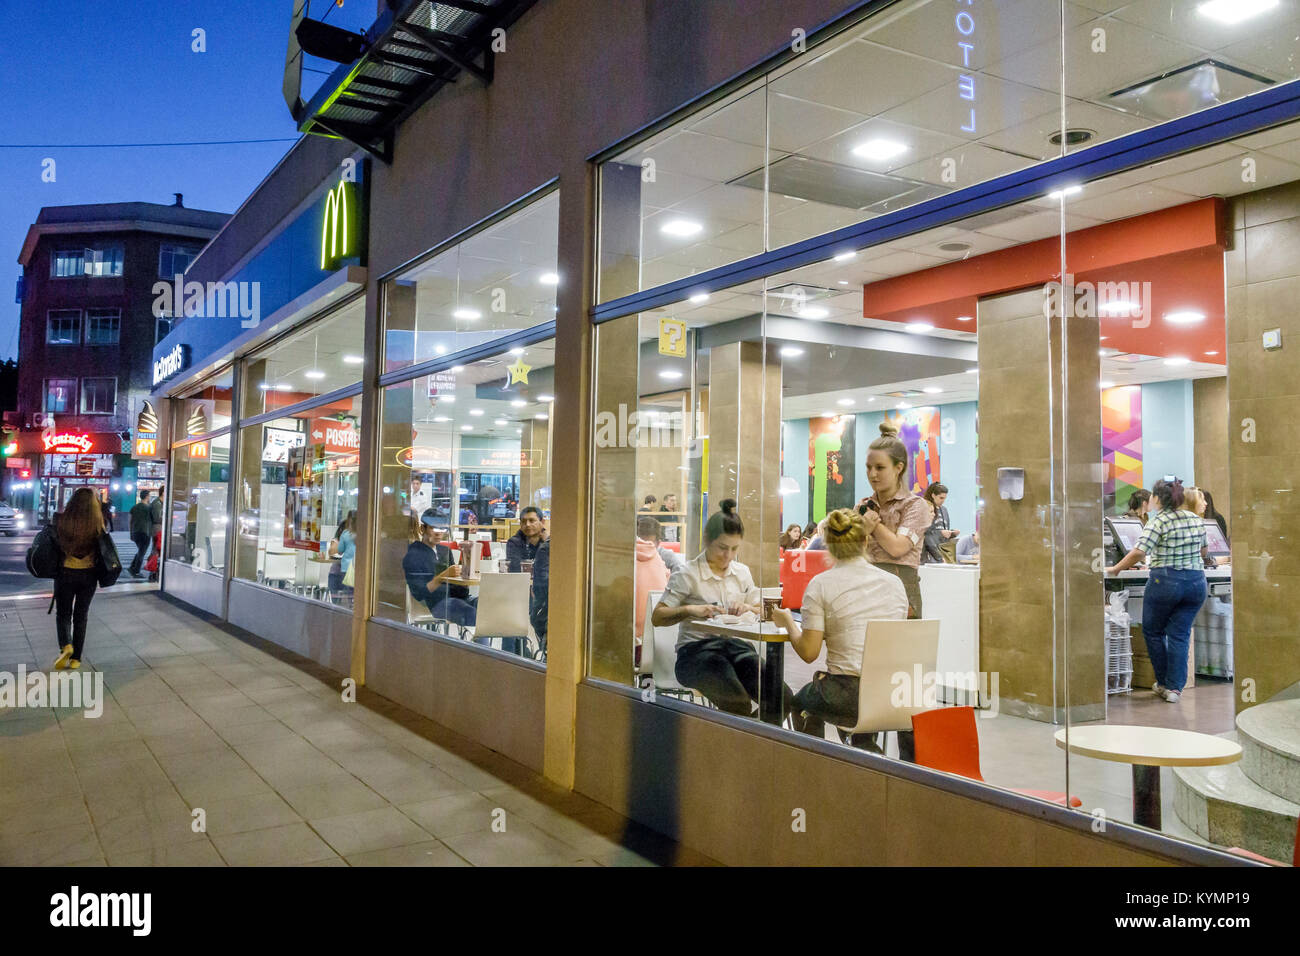 Buenos Aires Argentina, Palermo, serata notturna, McDonalds, ristorante ristoranti, cibo, caffè, hamburger americano, fast food, finestra, illuminazione, vista Foto Stock